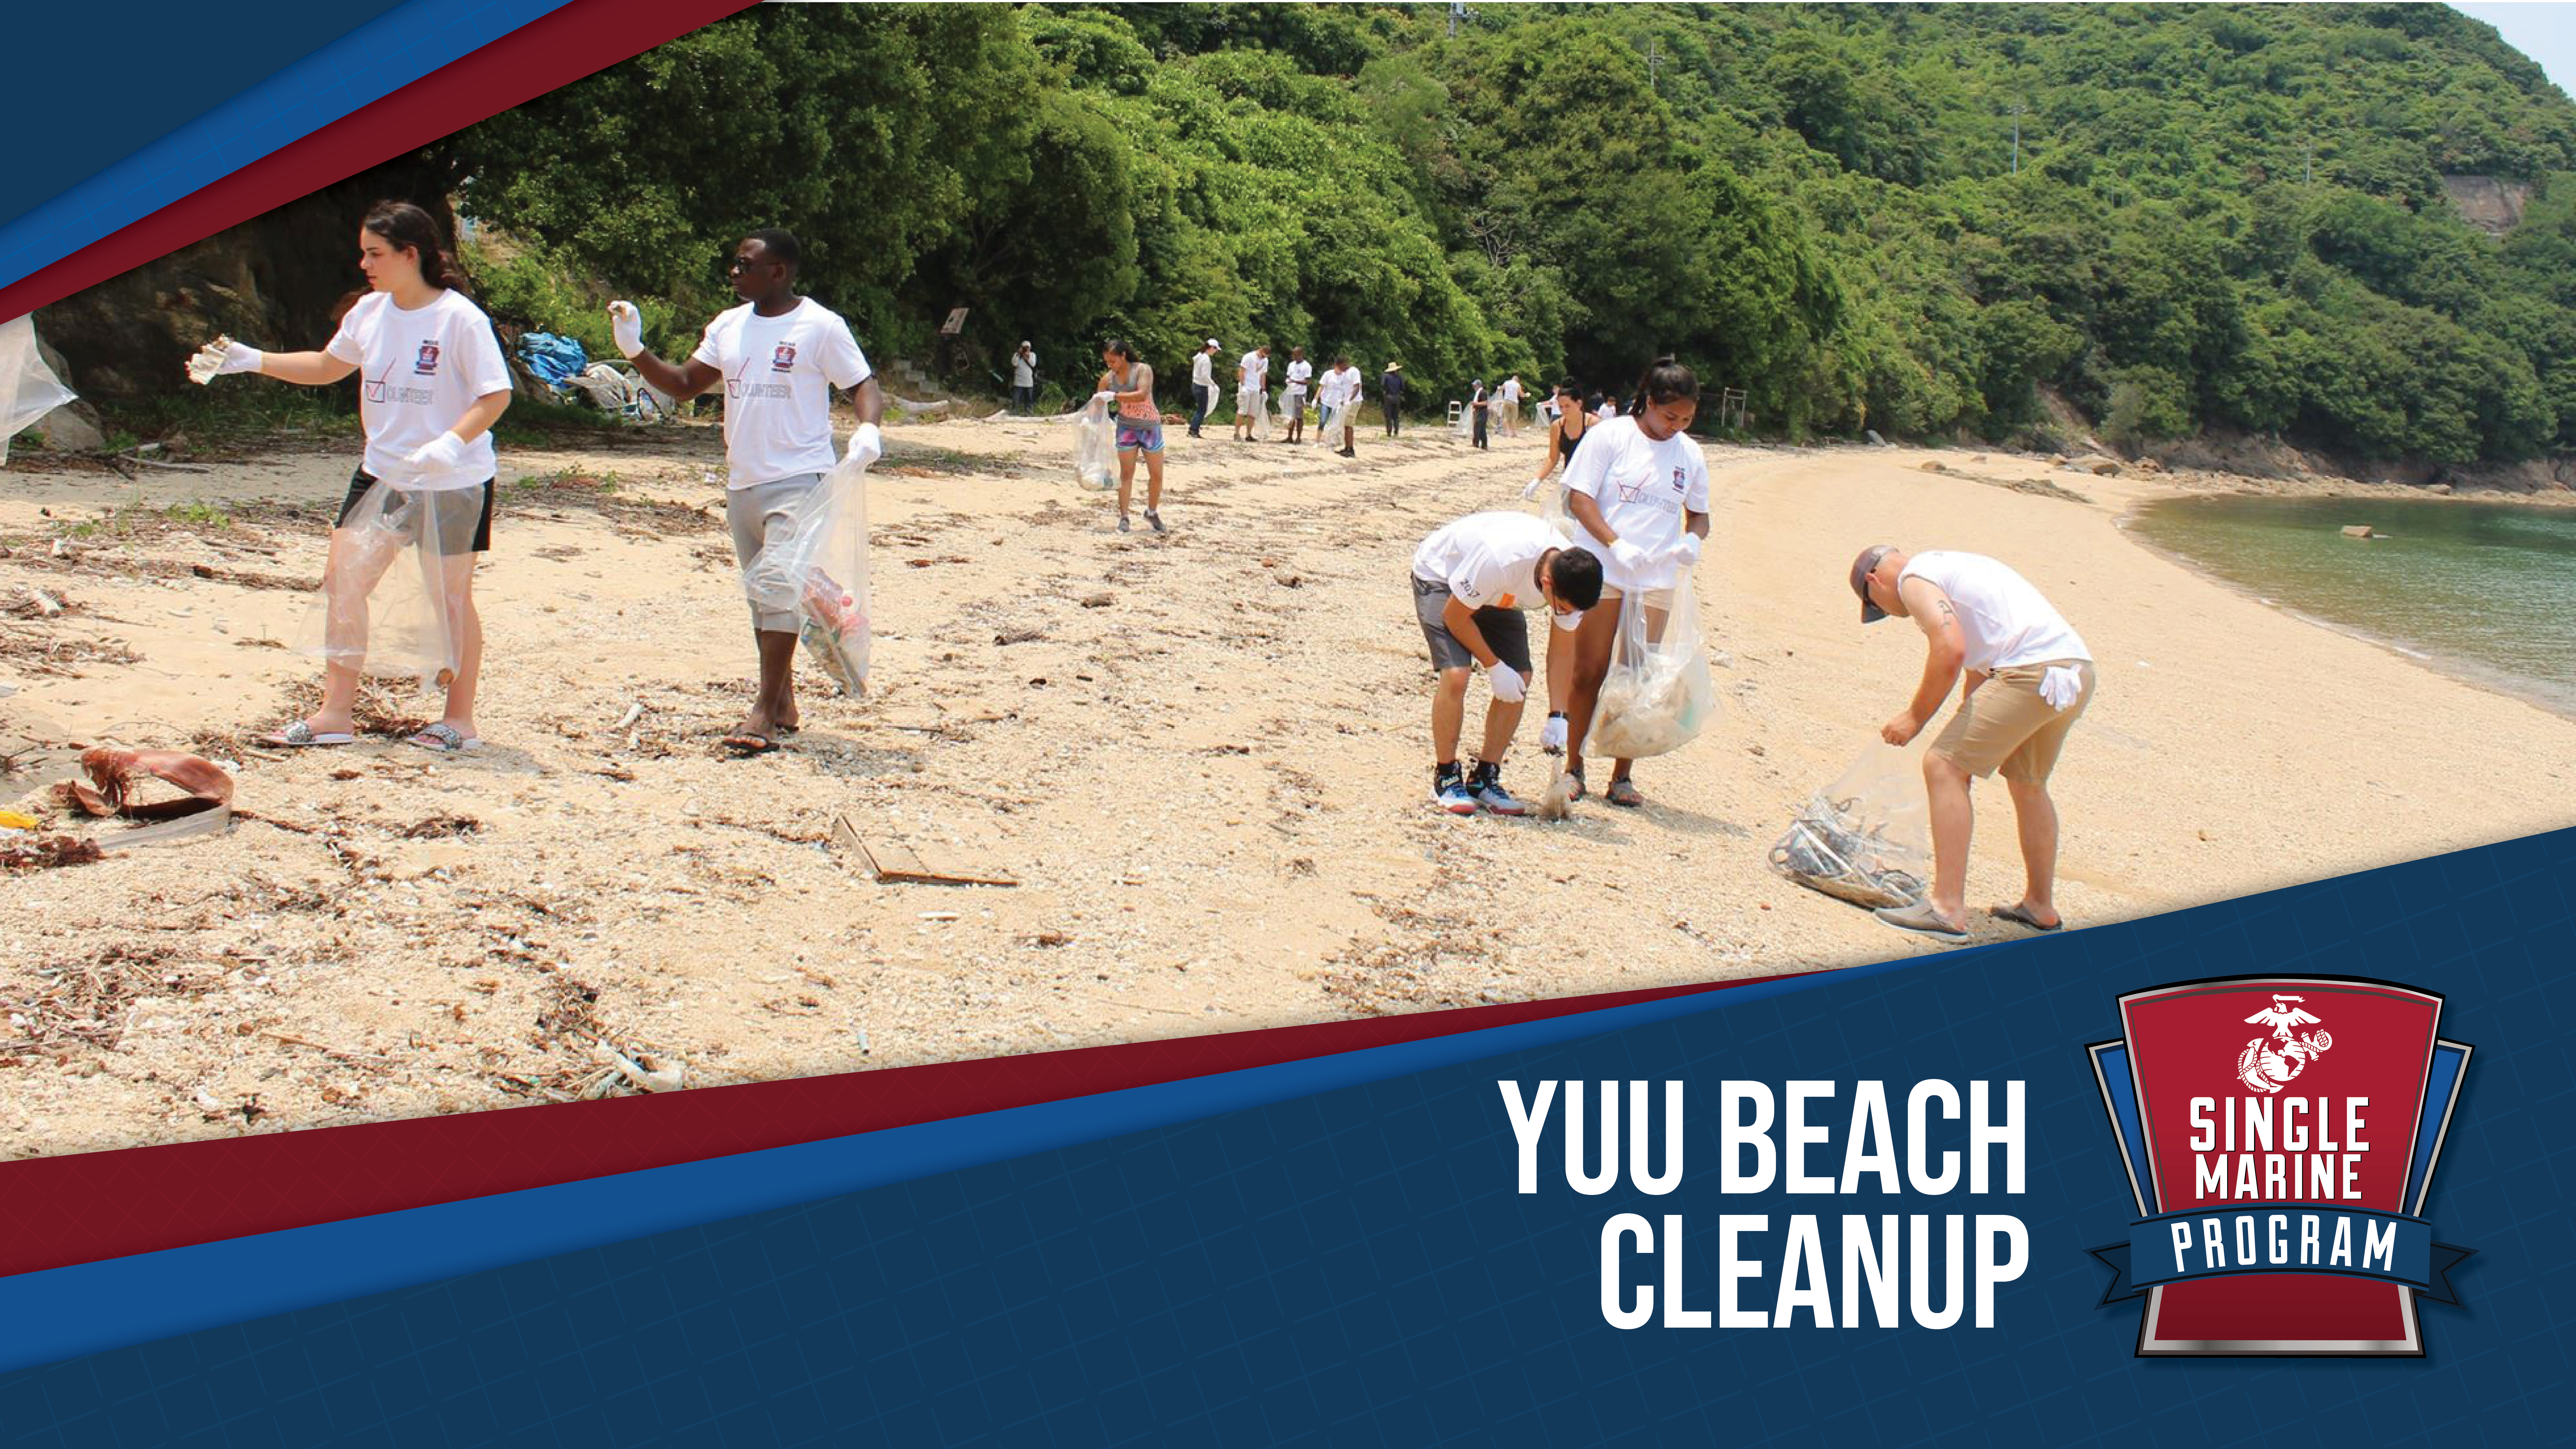 SMP - Yuu Beach Cleanup